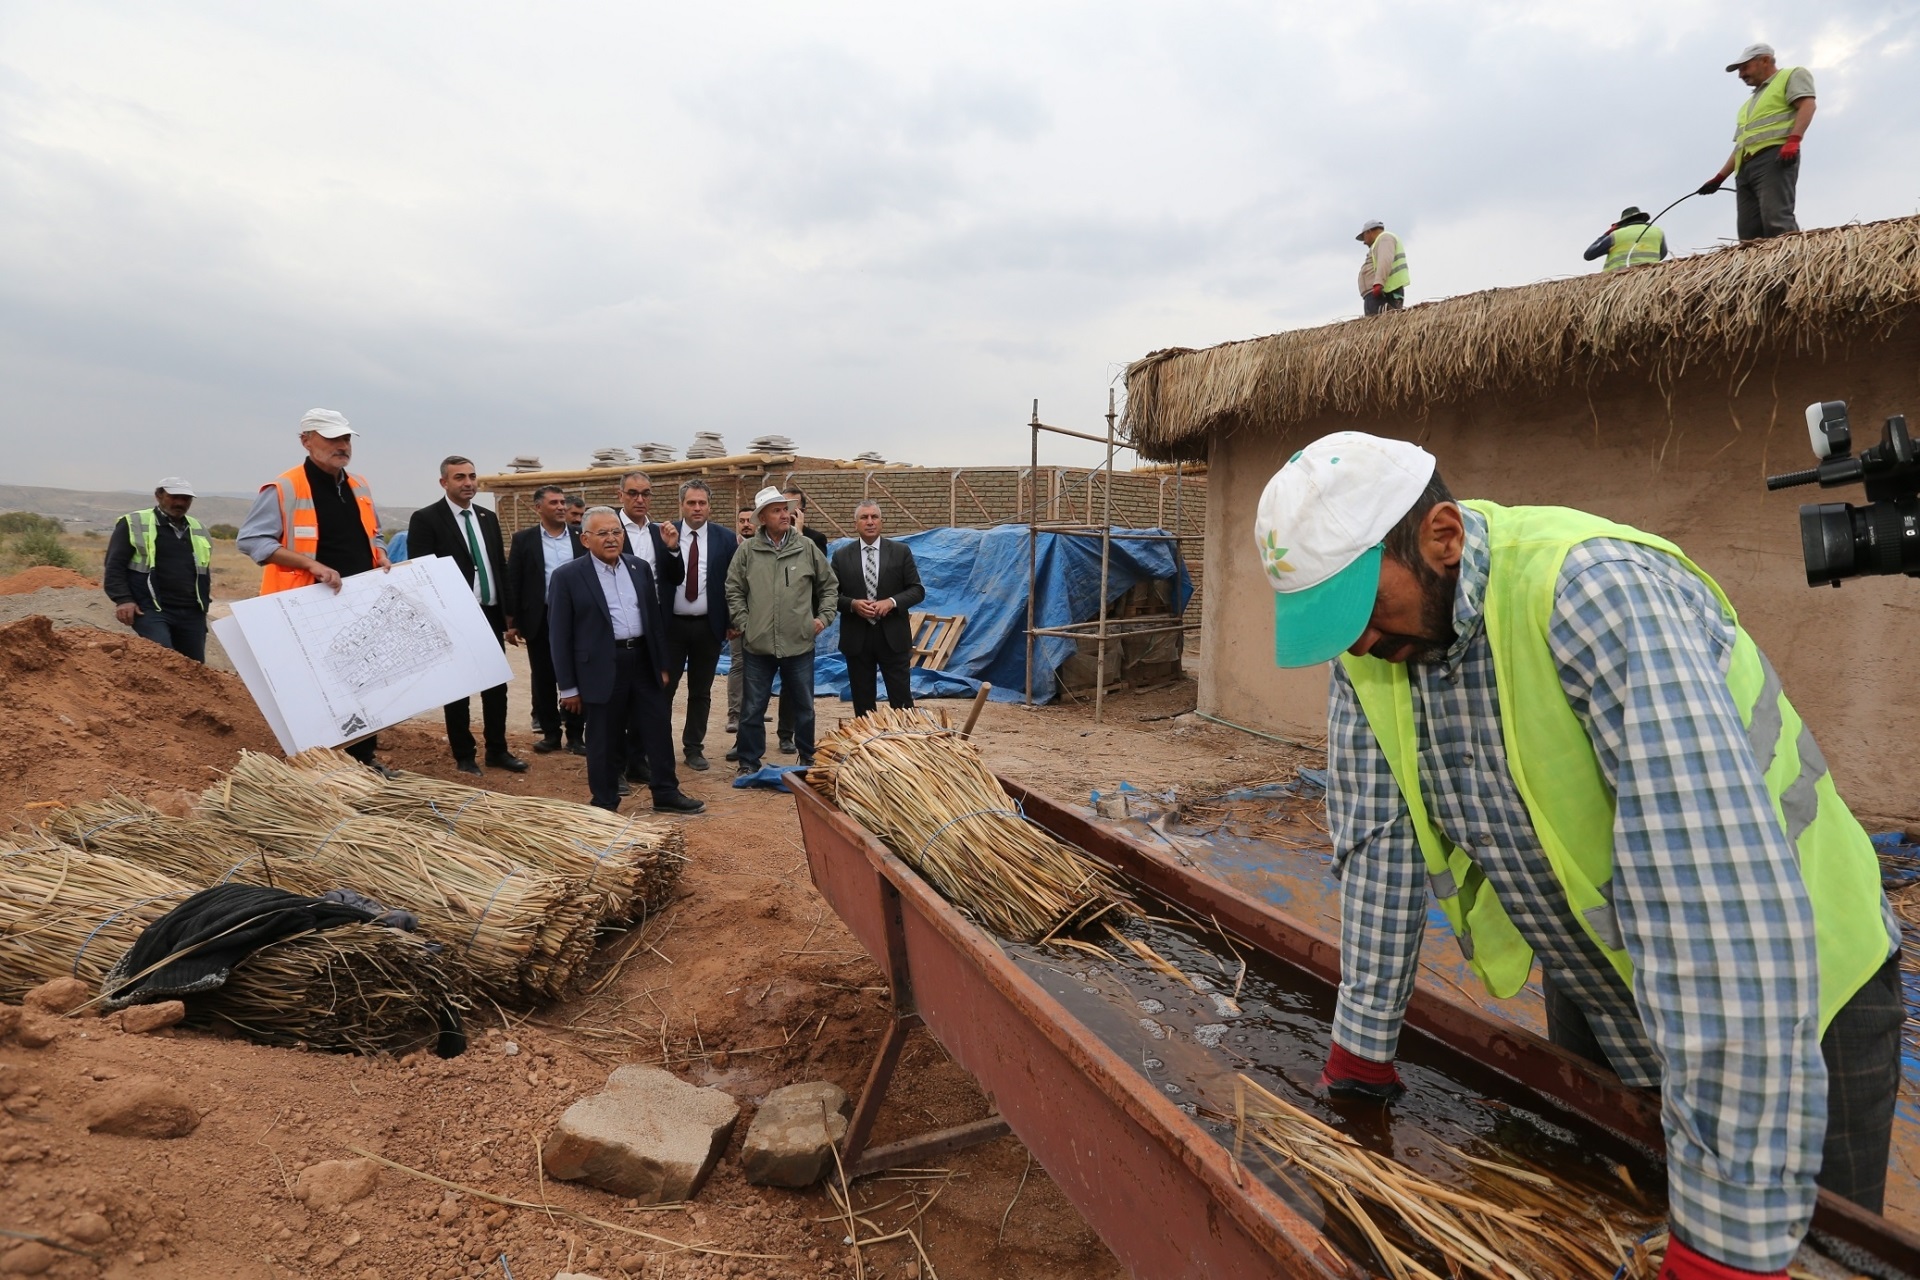 14 Ev ve Asurlu Tüccarlar Mahallesi Projesi’nin çalışmalarında sona yaklaşıldı